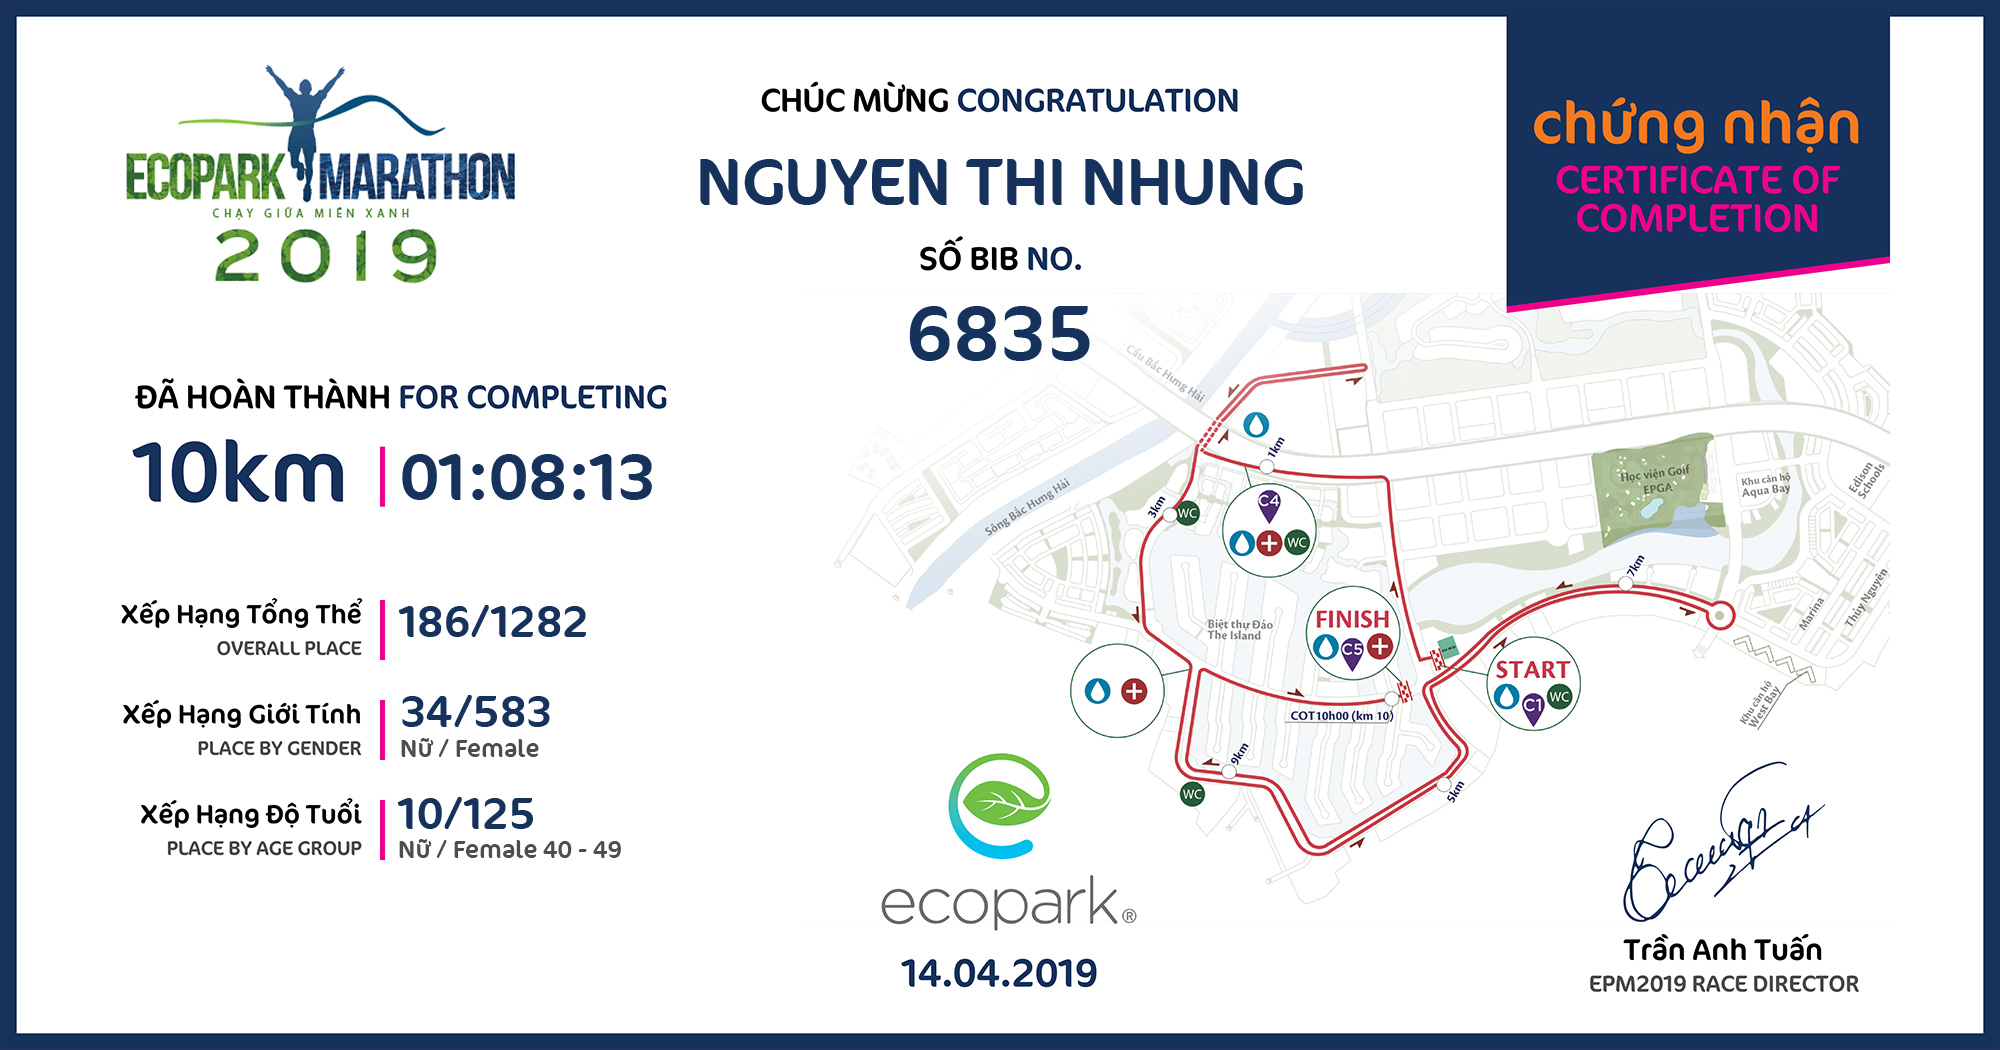 6835 - Nguyen Thi Nhung